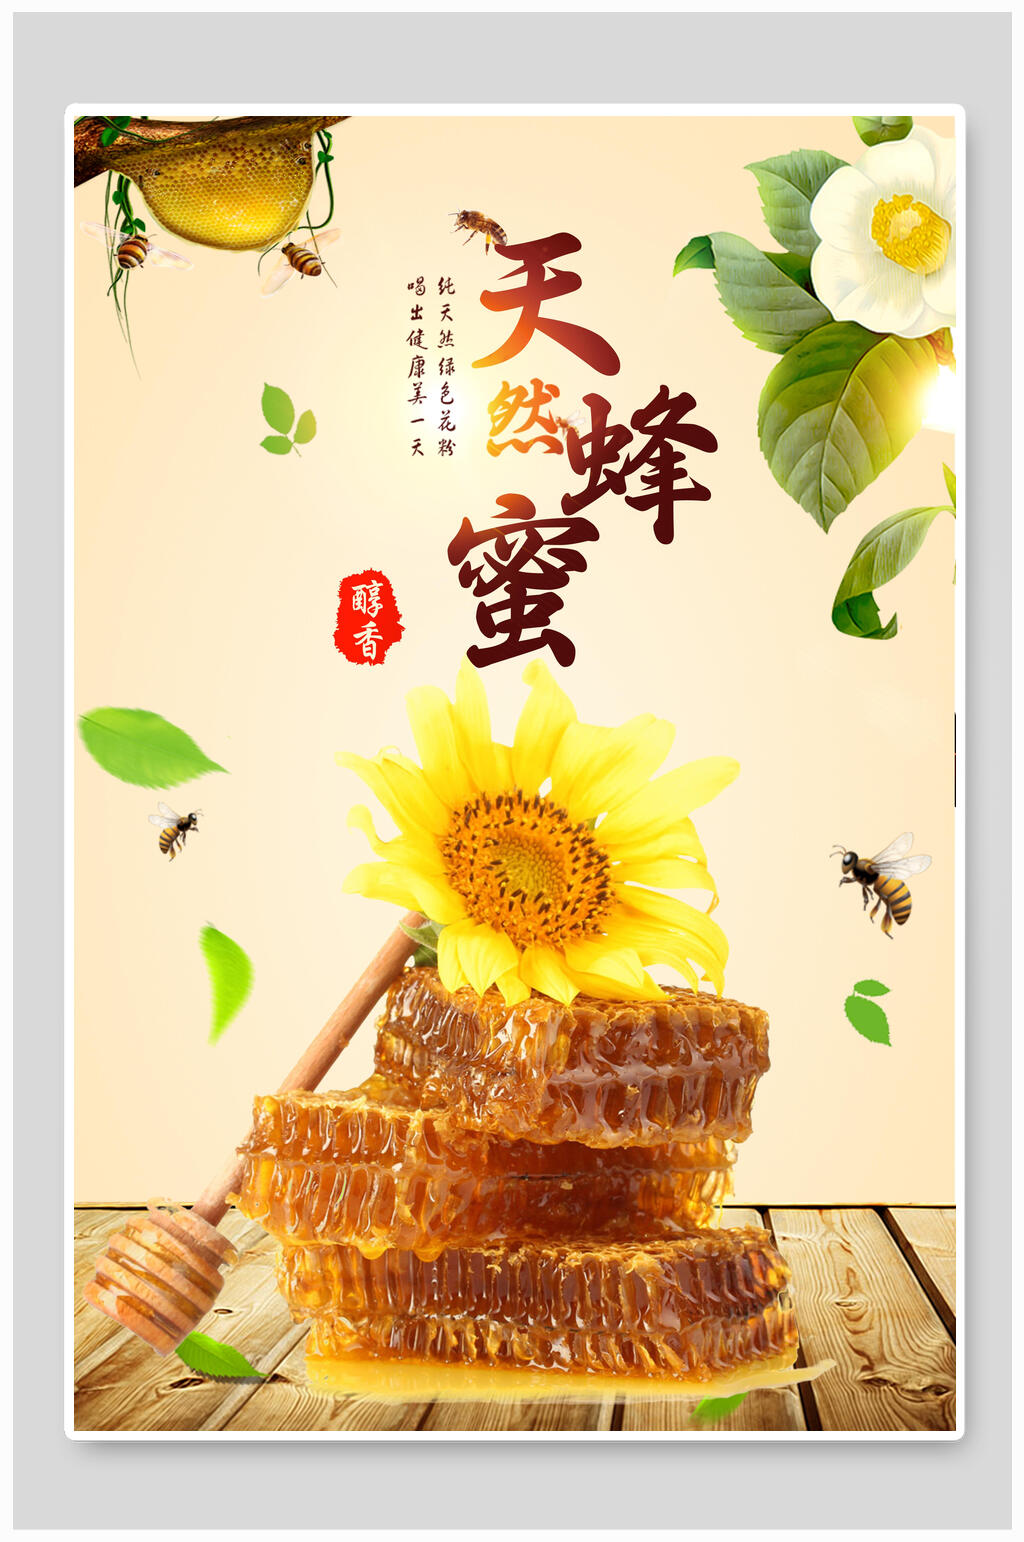 蜂蜜食品海报素材免费下载,本作品是由小红1210上传的原创平面广告